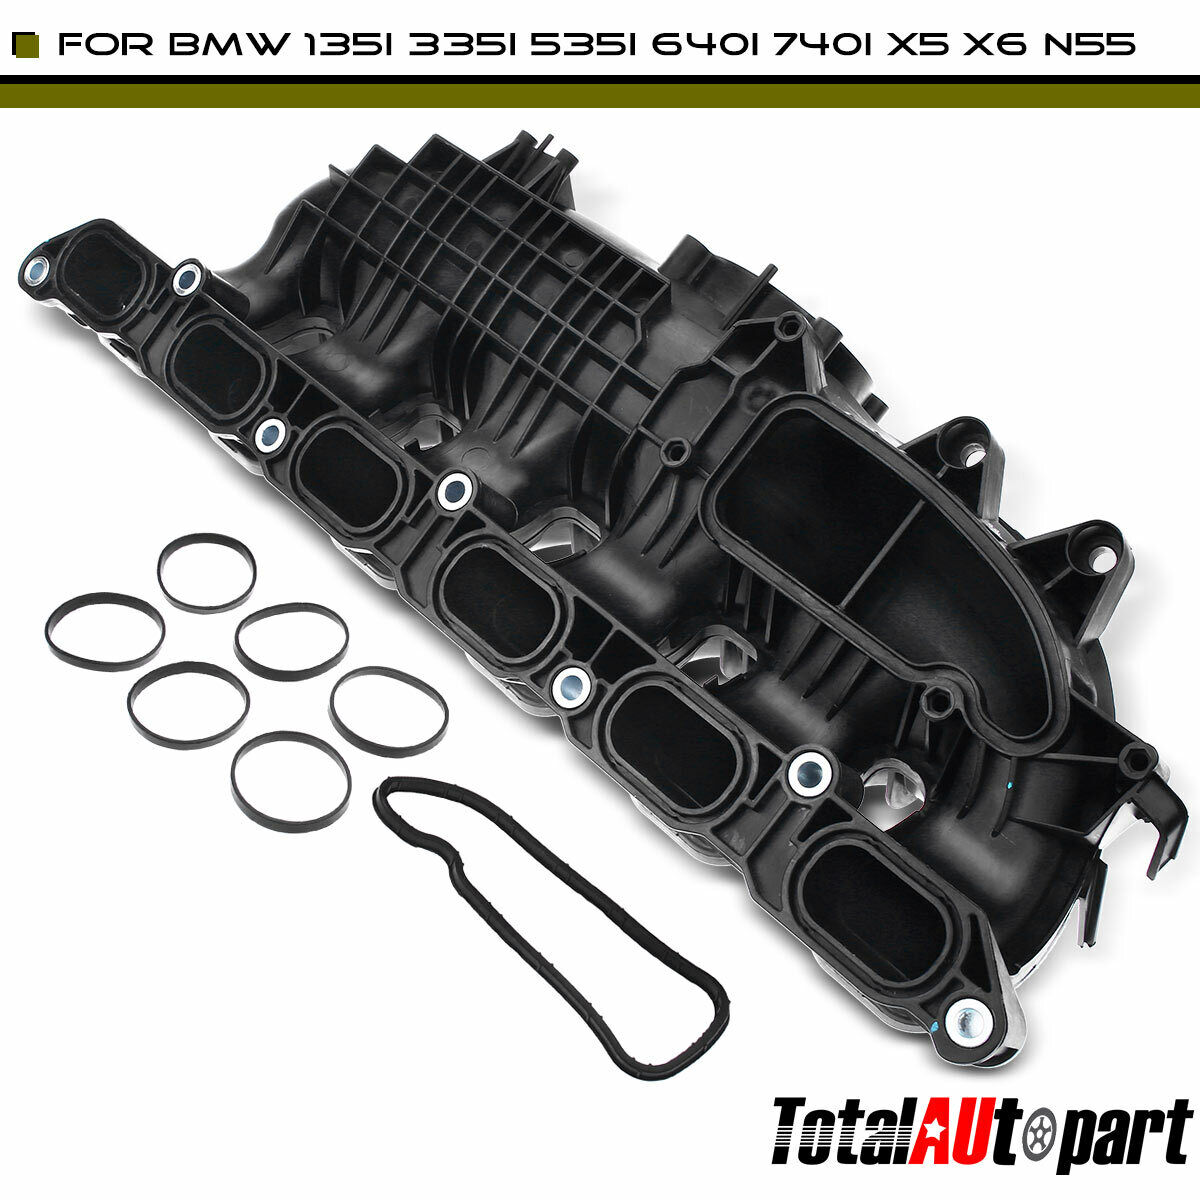 Engine Intake Manifold for BMW E84 E88 E90 F20 F21 F23 L6 3.0L Turbo 11617576911